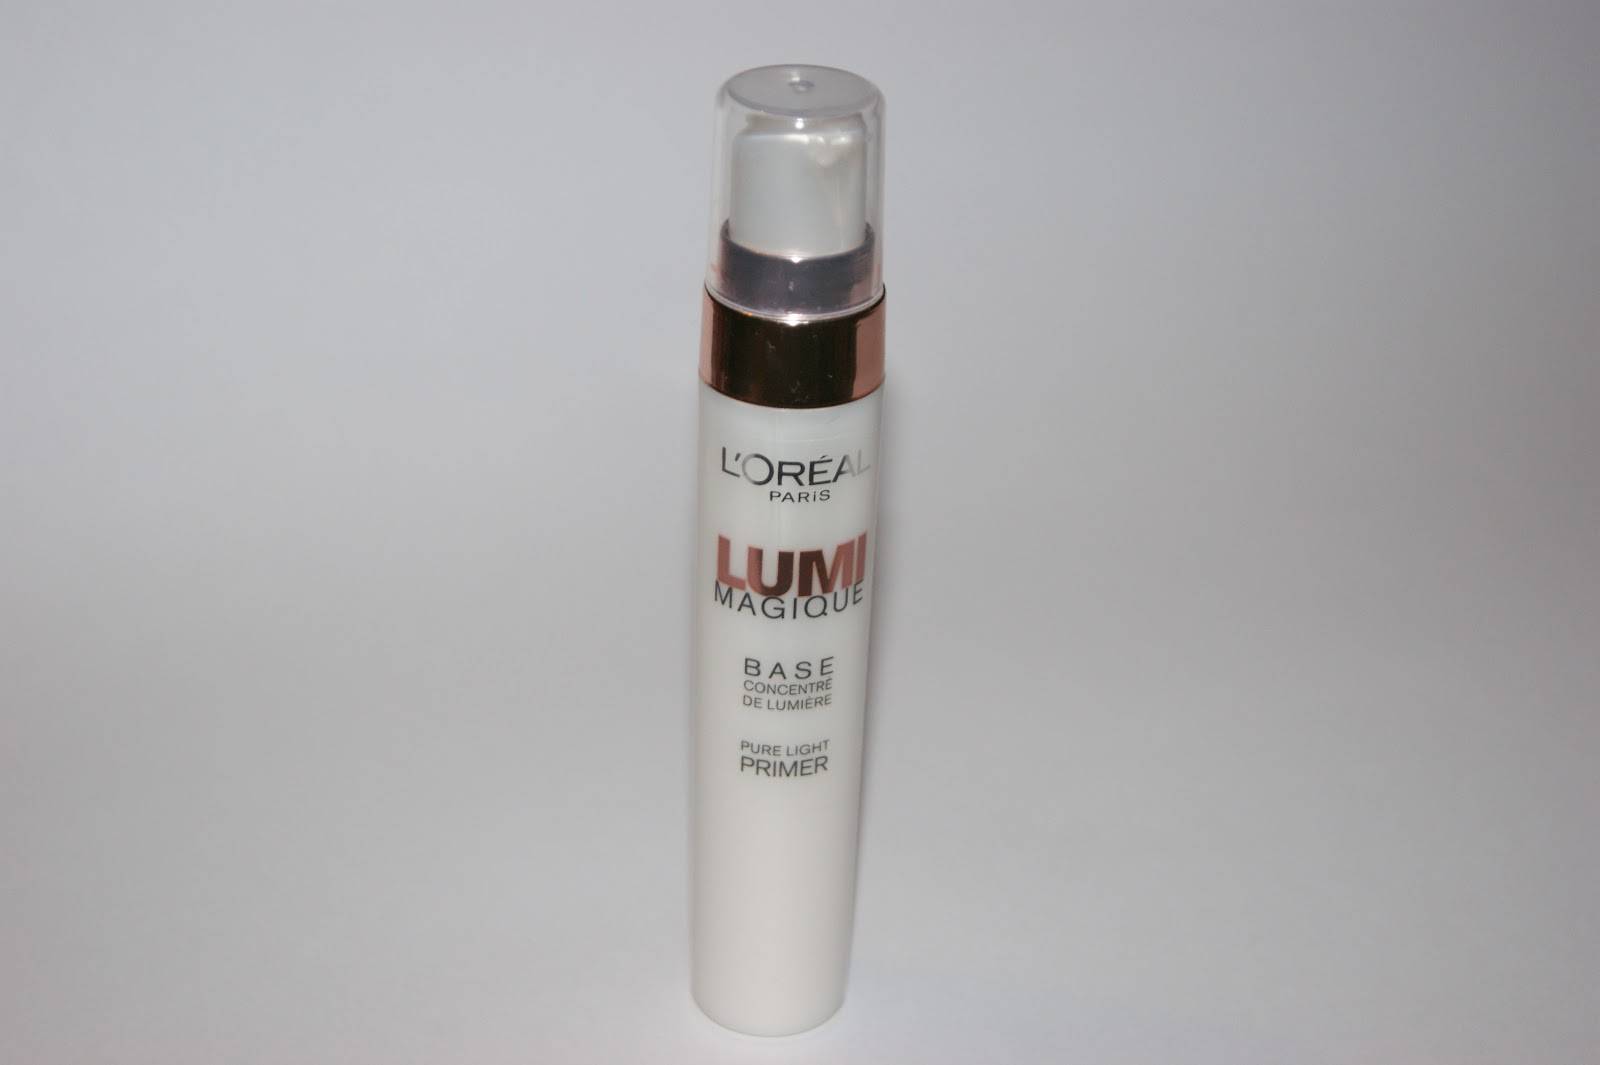 Обзор lumi magique base pure light primer от l’oreal paris - аквамарин "ювелир"